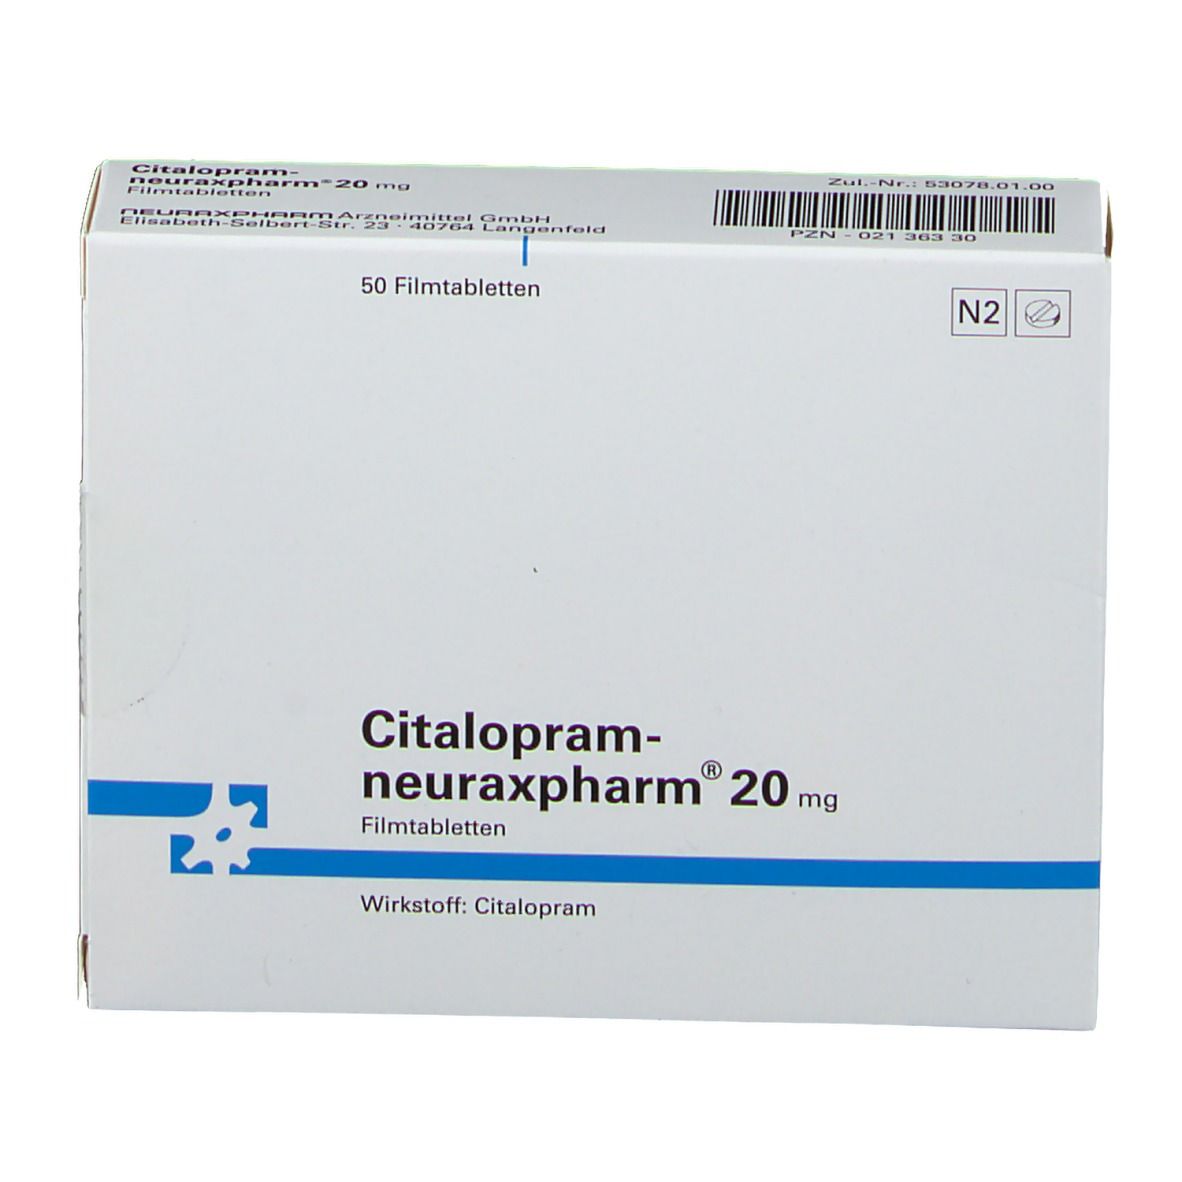 Citalopram-neuraxpharm® 20 mg